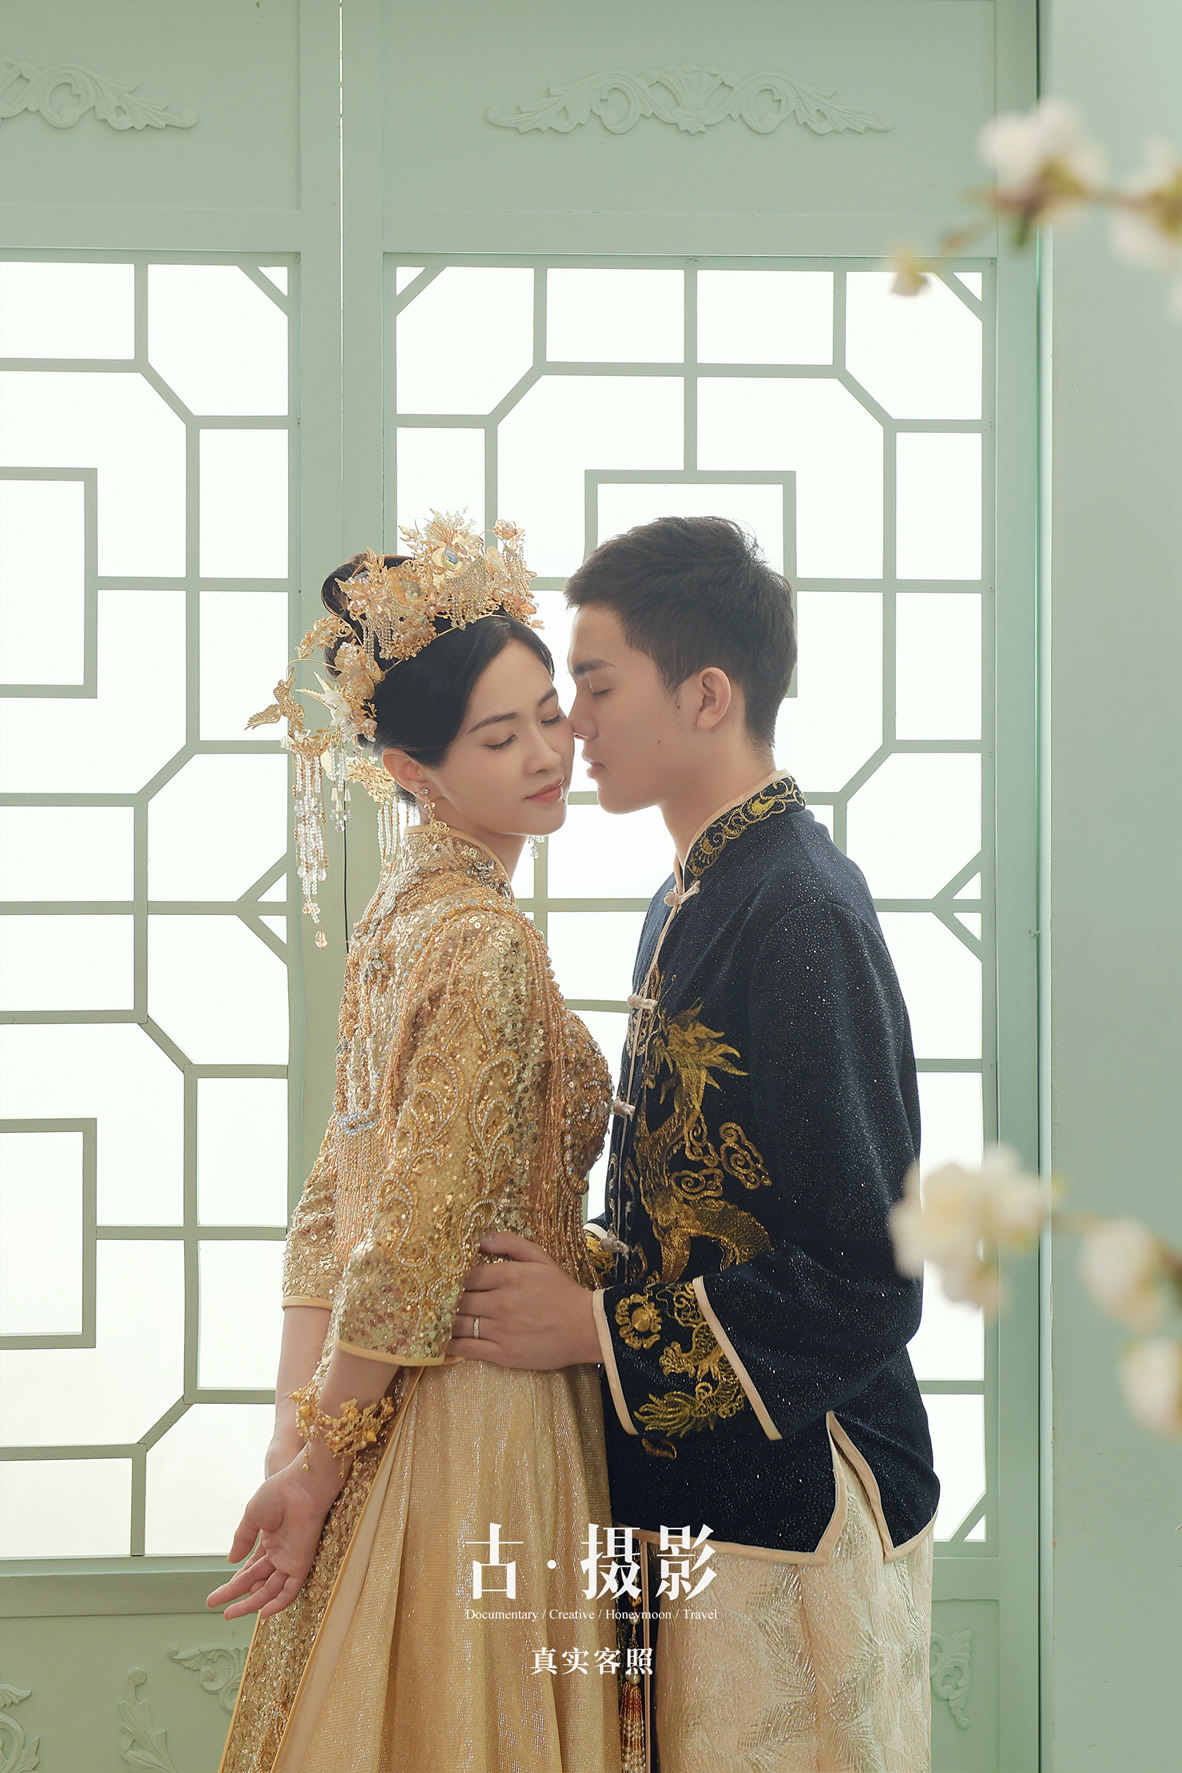 许先生 刘小姐 - 每日客照 - 广州婚纱摄影-广州古摄影官网